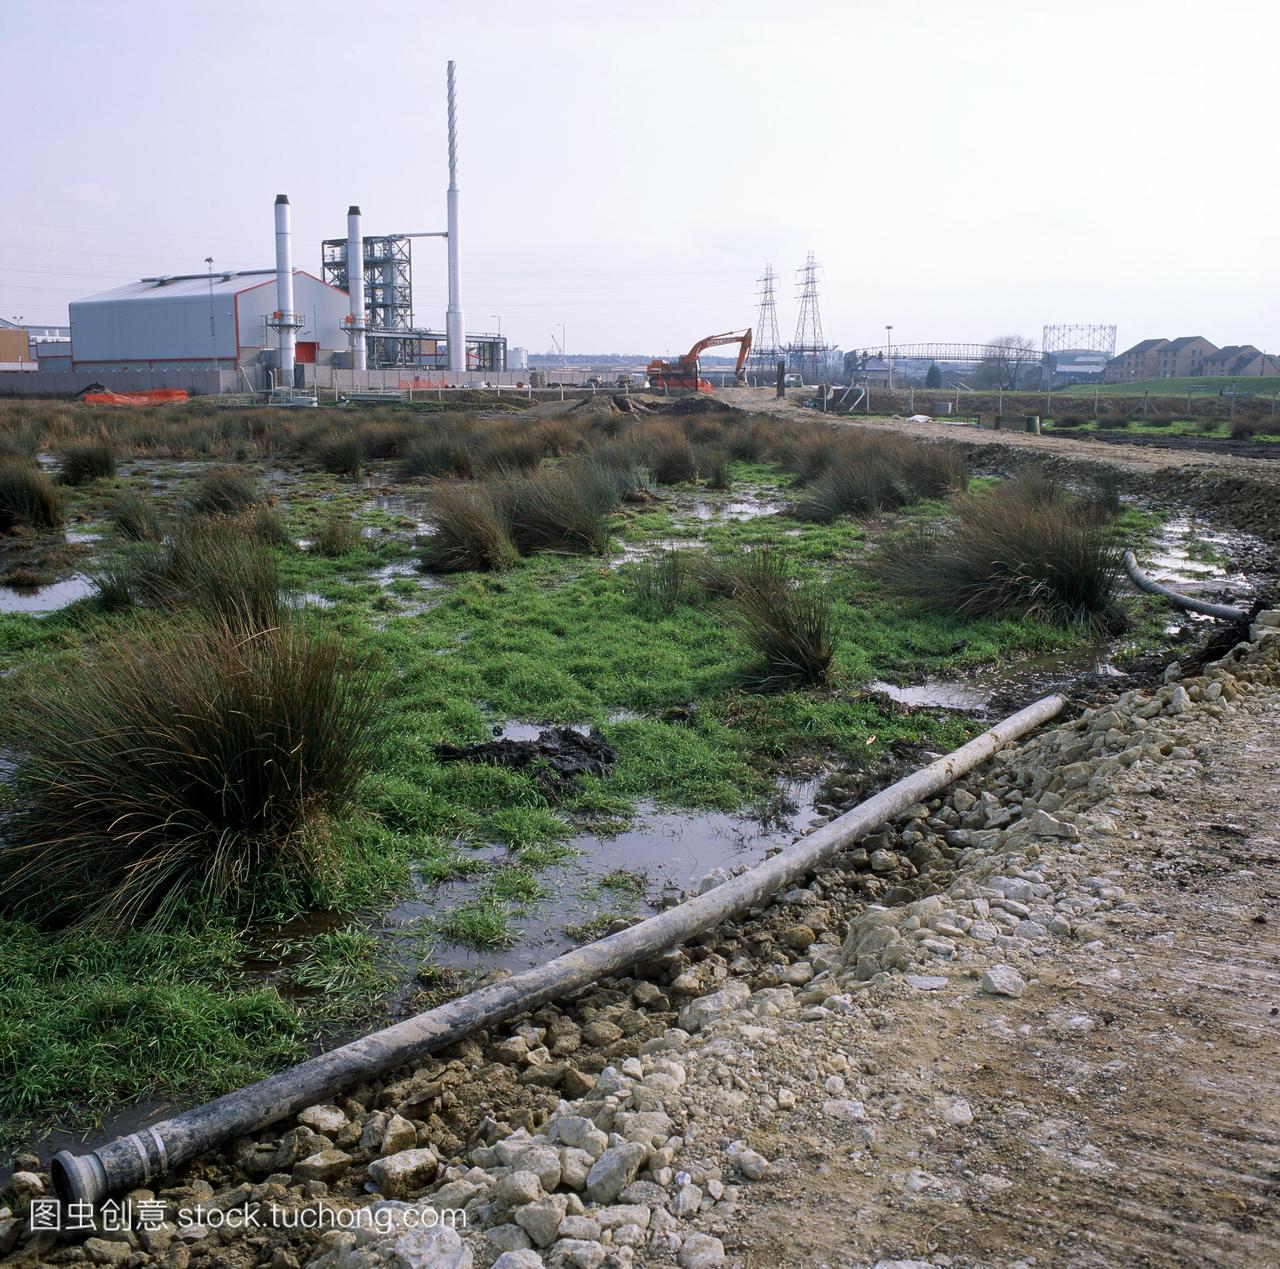 沼泽受到建设这个淡水沼泽被威胁道路右的建设